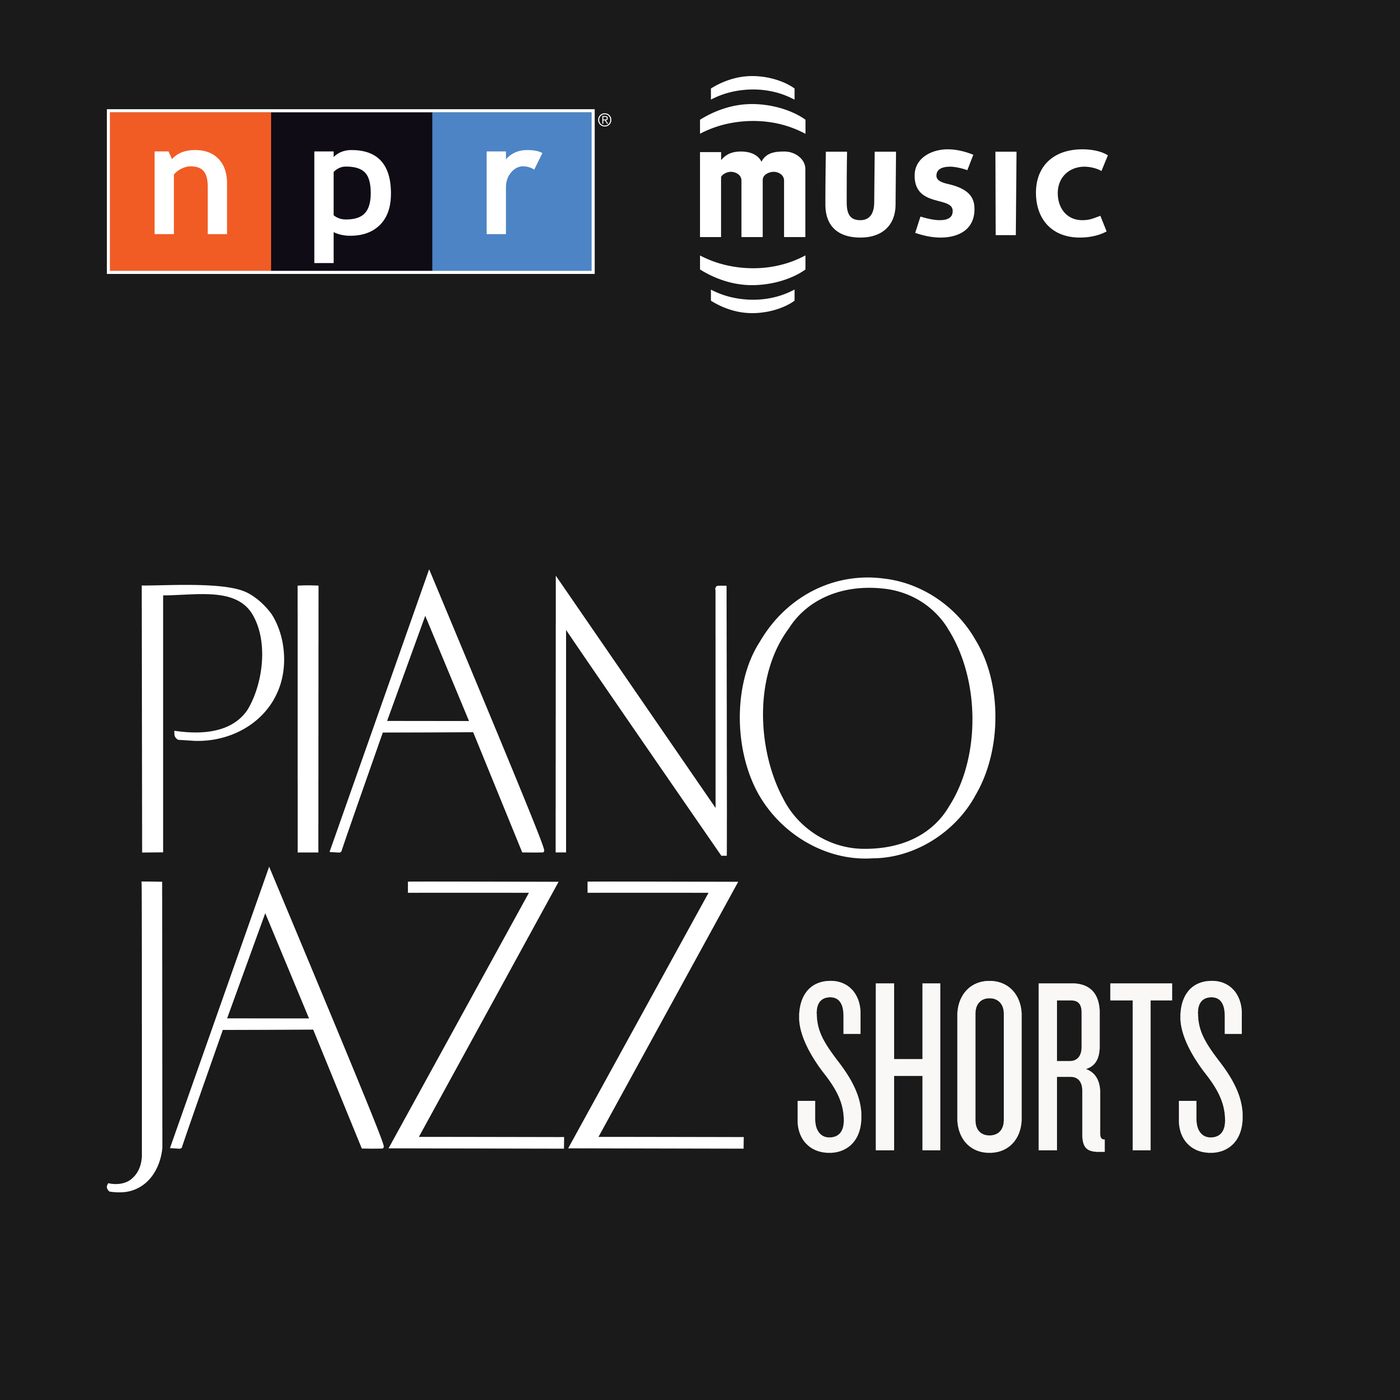 Pat Metheny on Piano Jazz